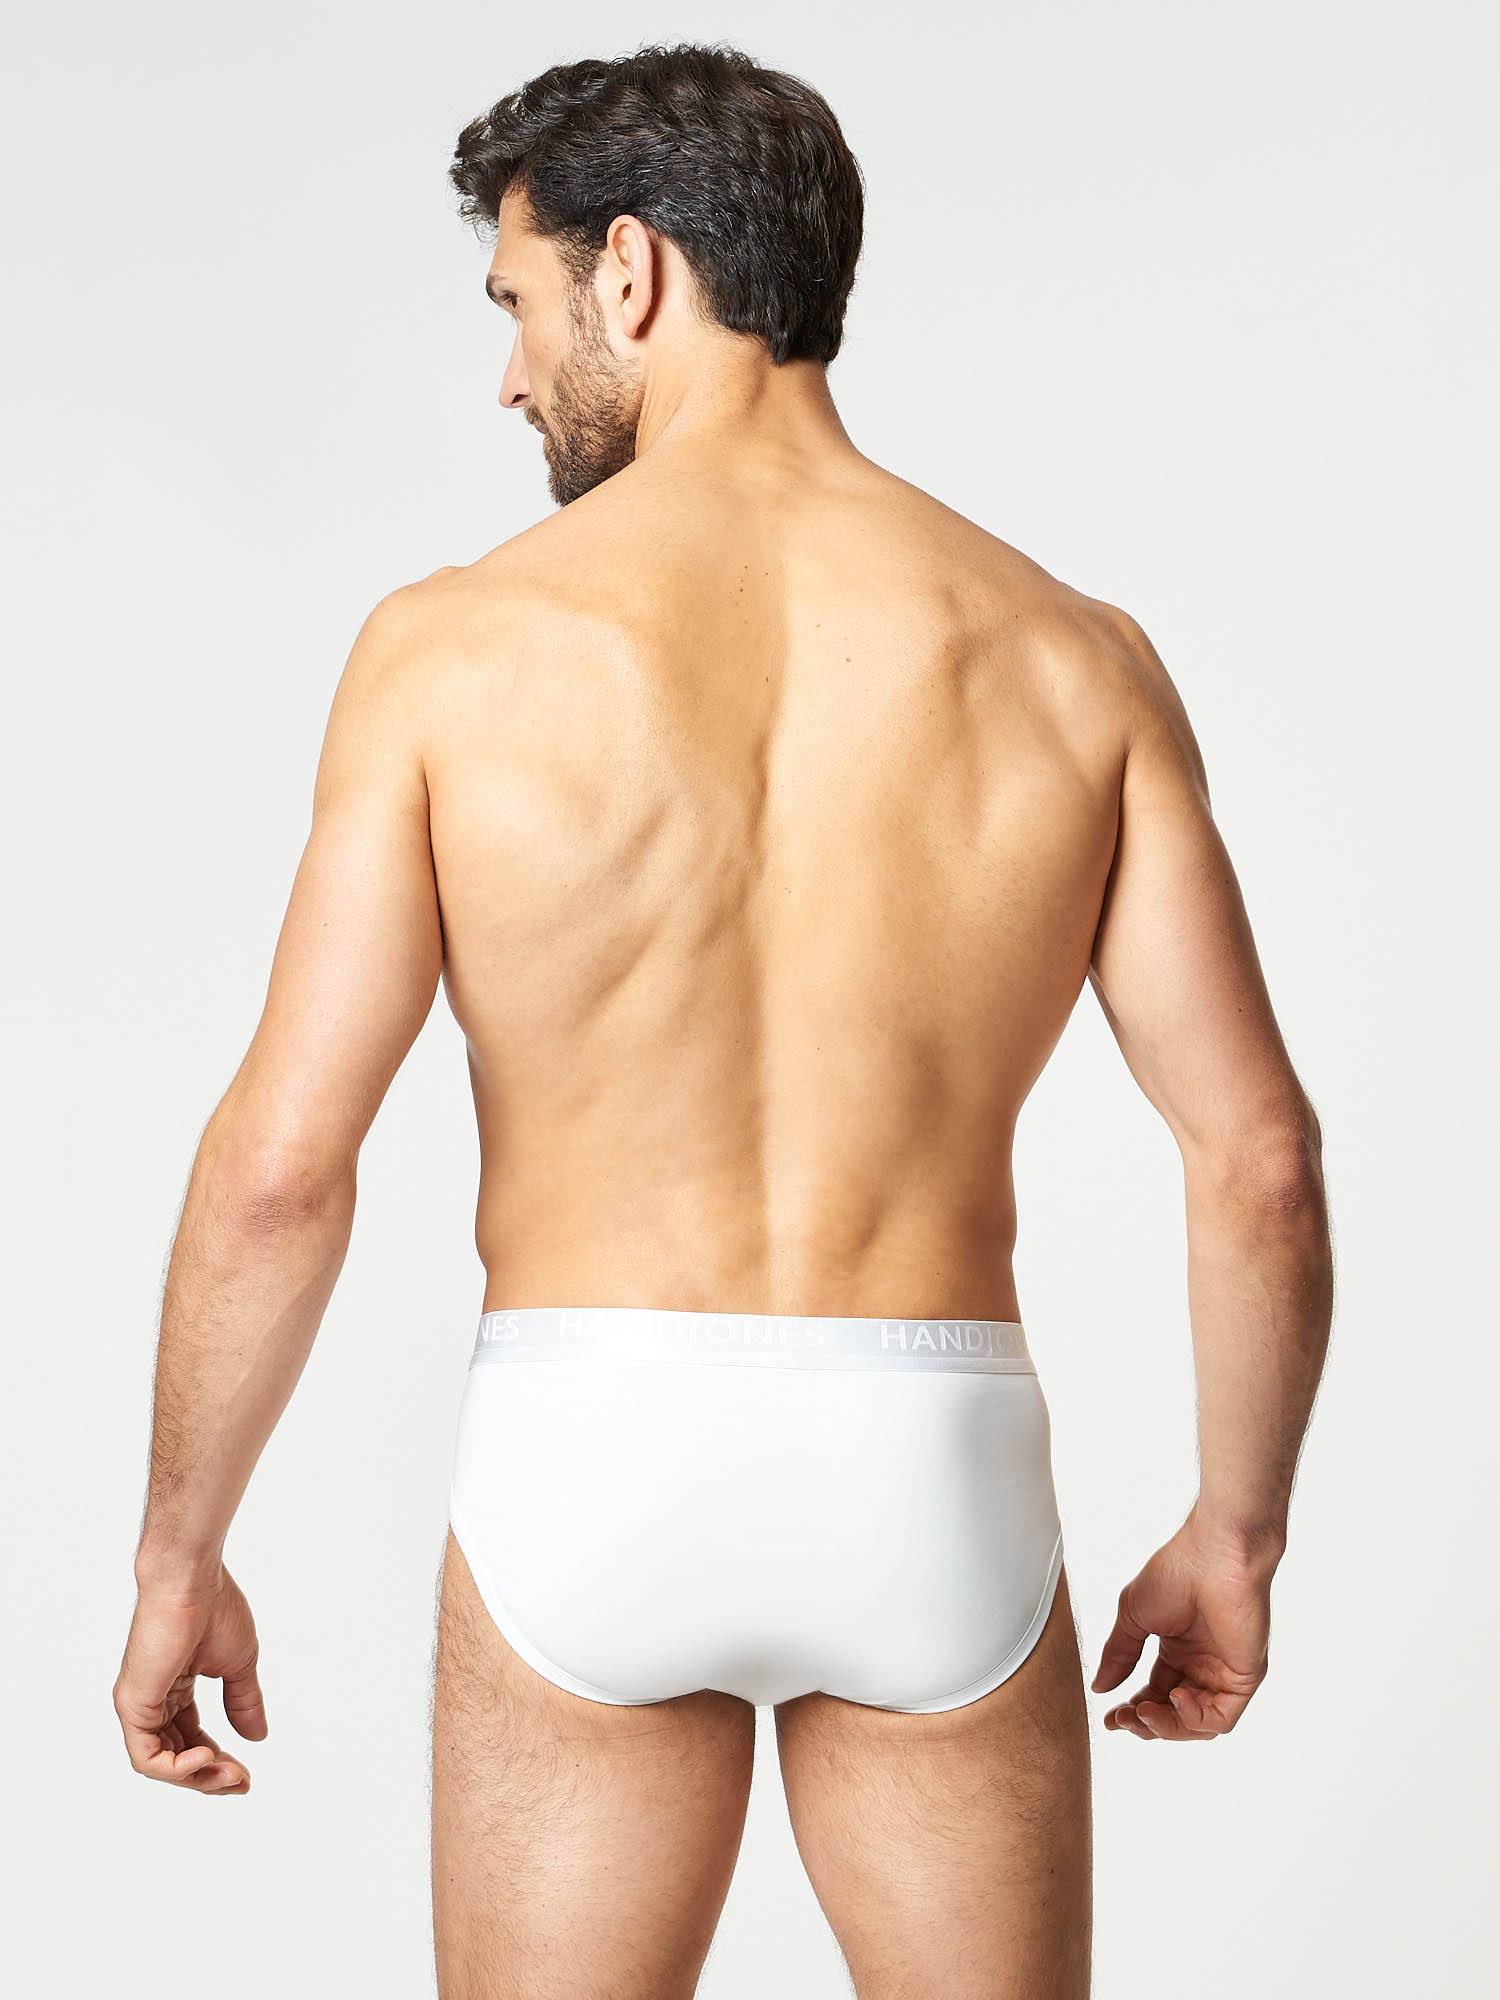 White cotton brief | Men's Underwear | Hand & Jones